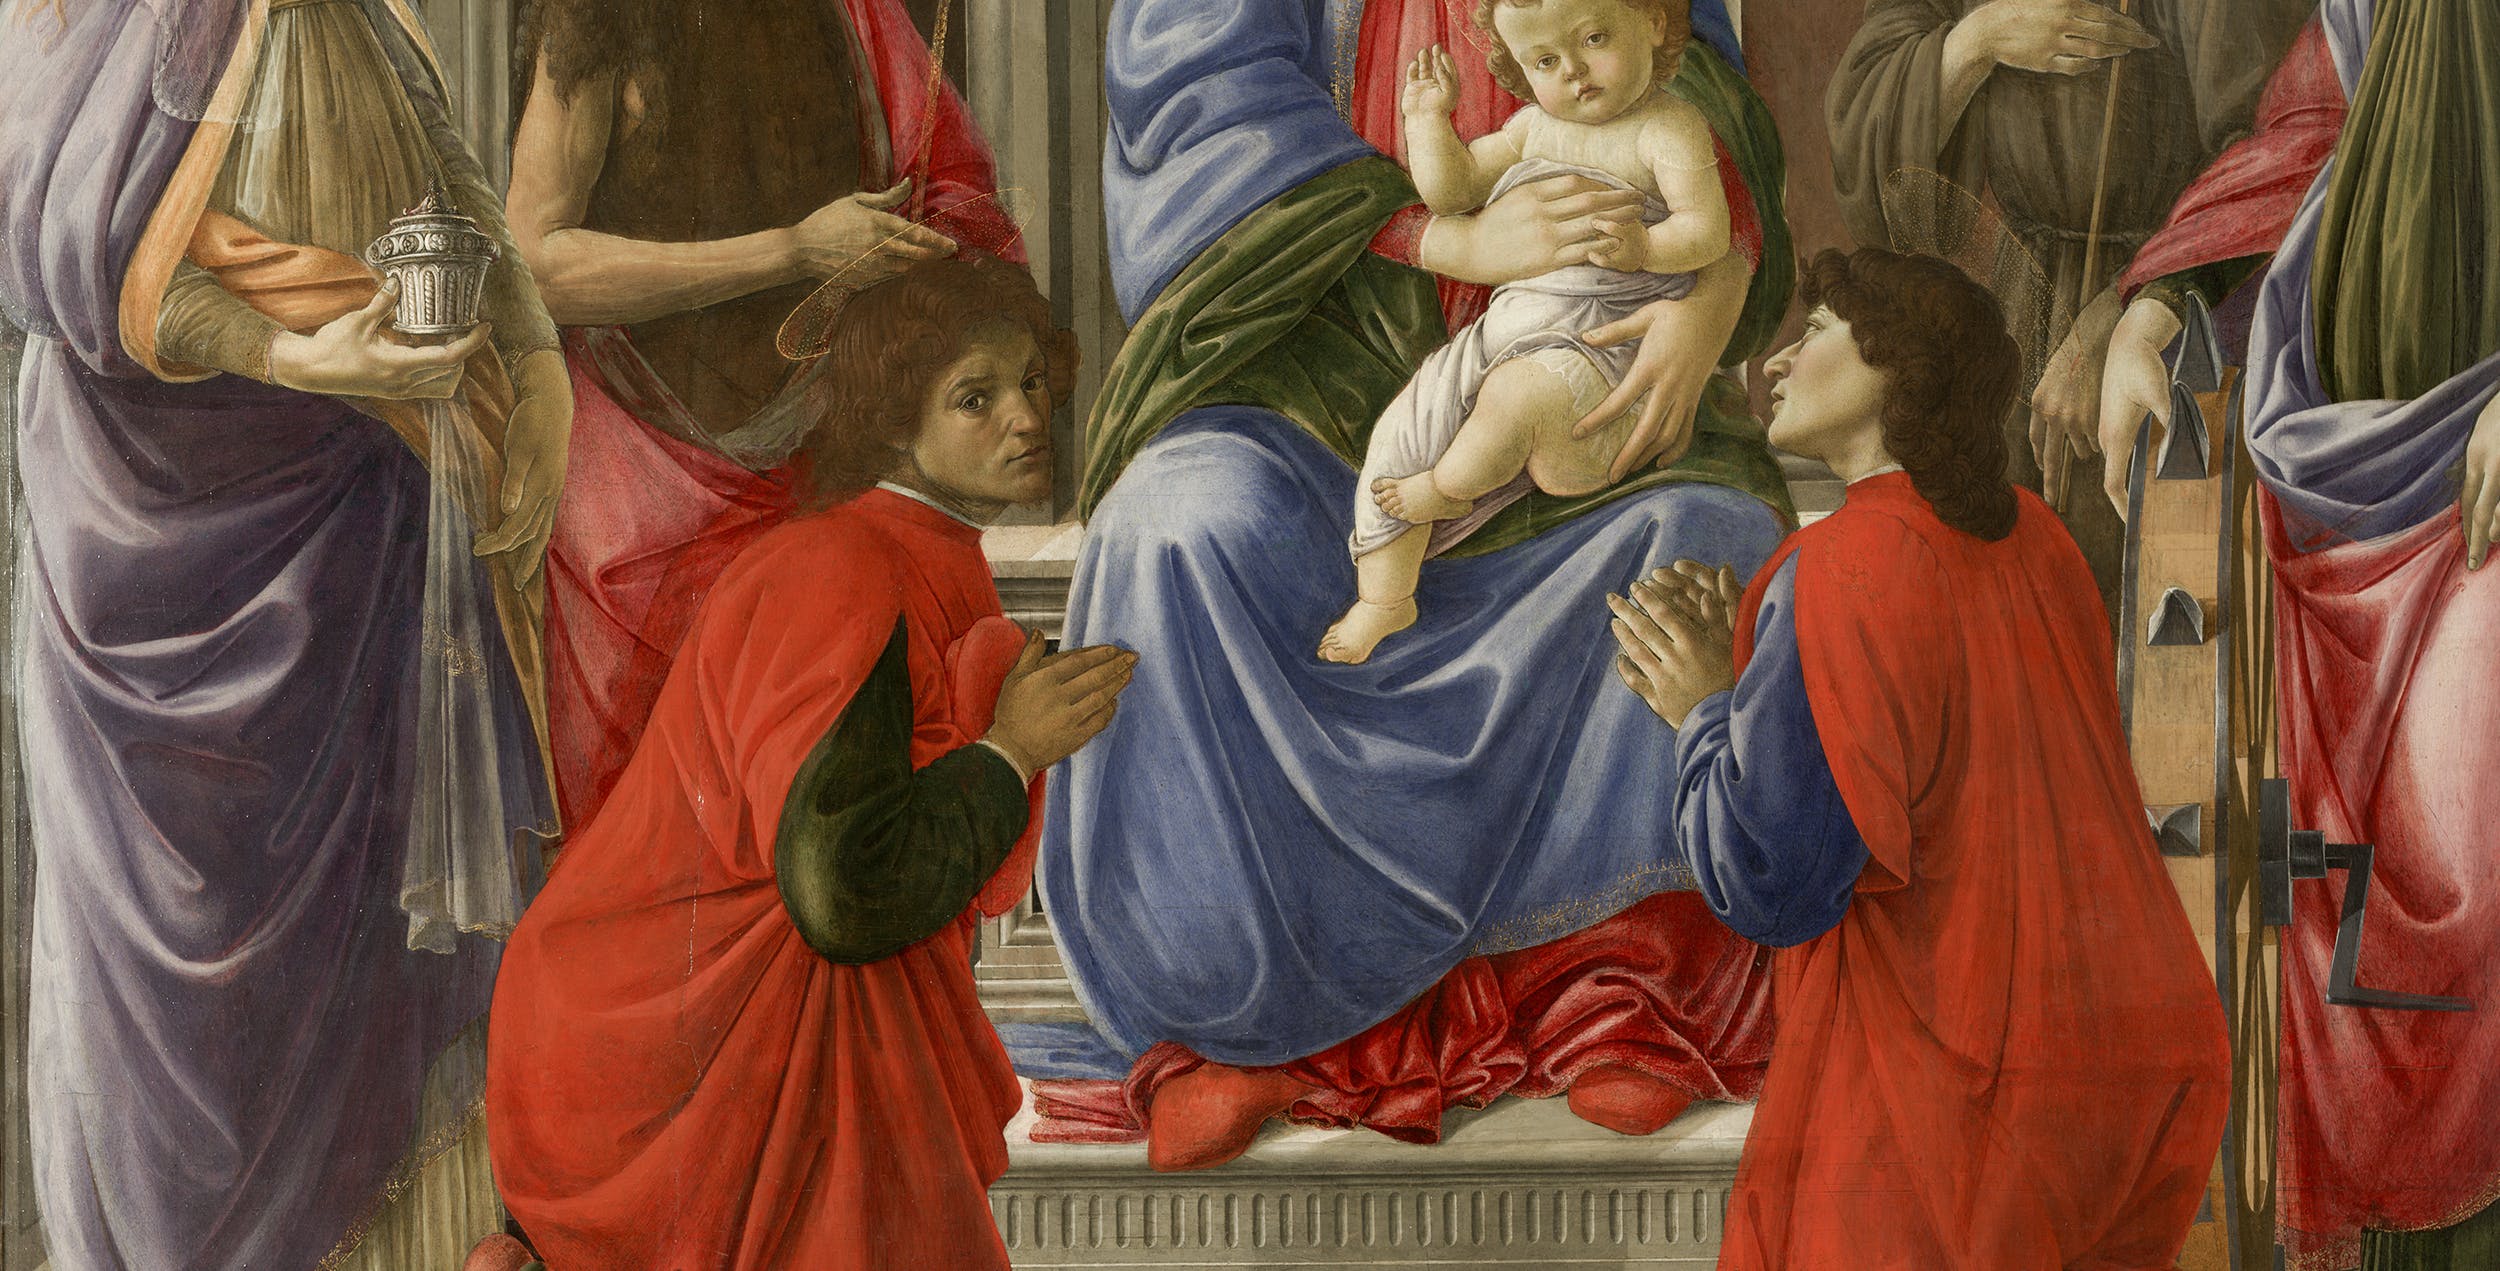 Guarigioni miracolose nelle opere dei grandi artisti degli Uffizi